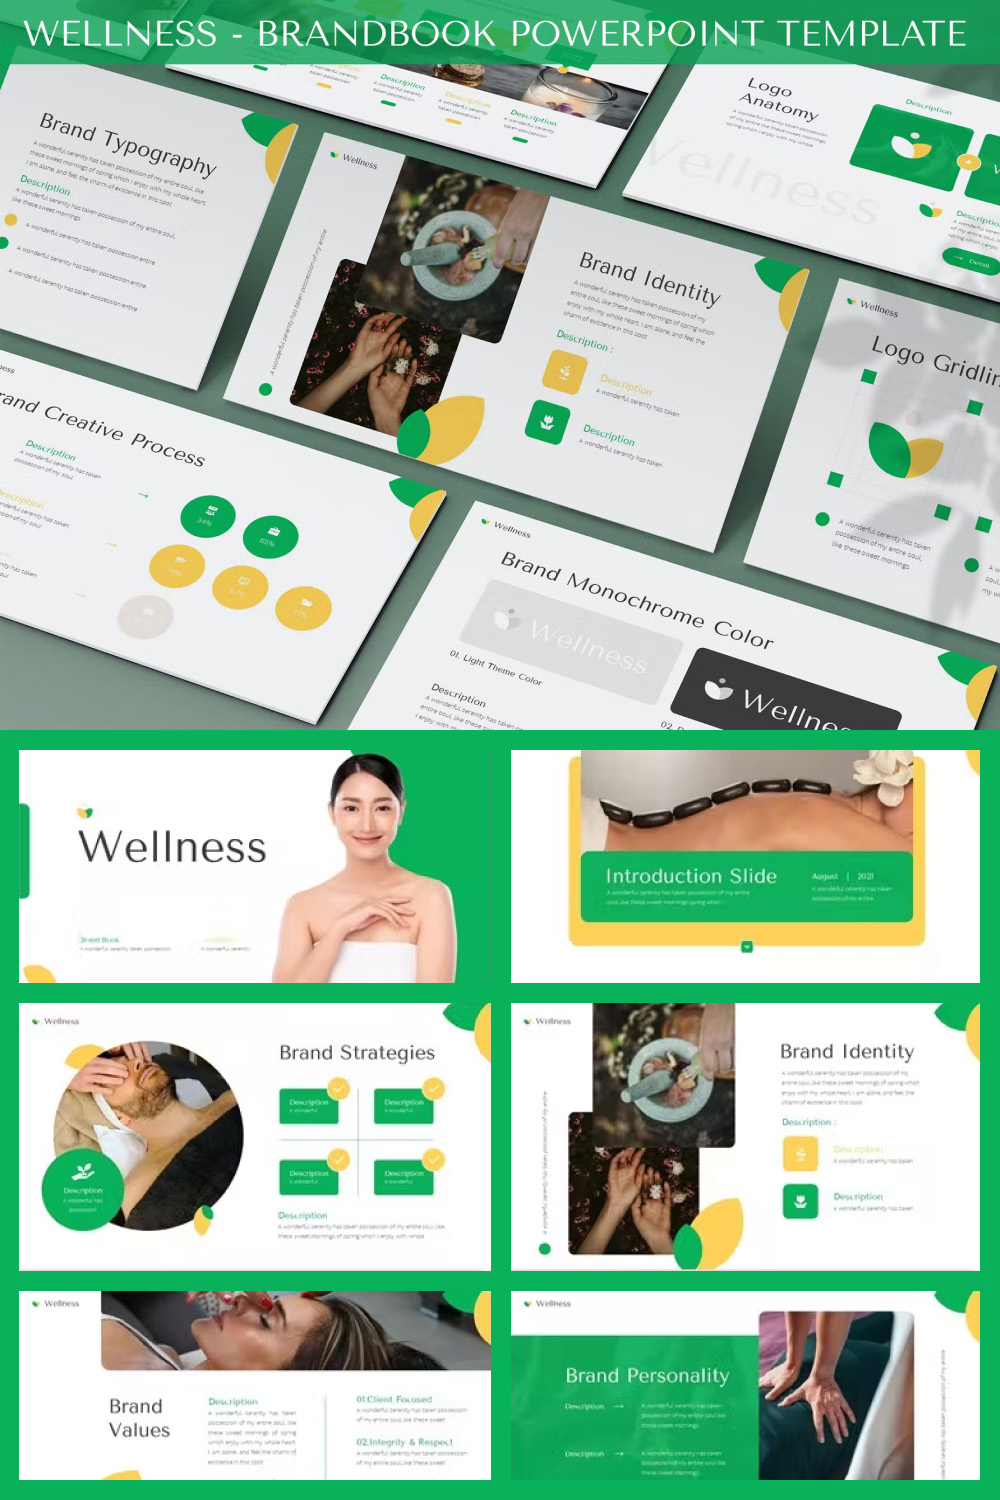 Wellness brandbook powerpoint template of pinterest.